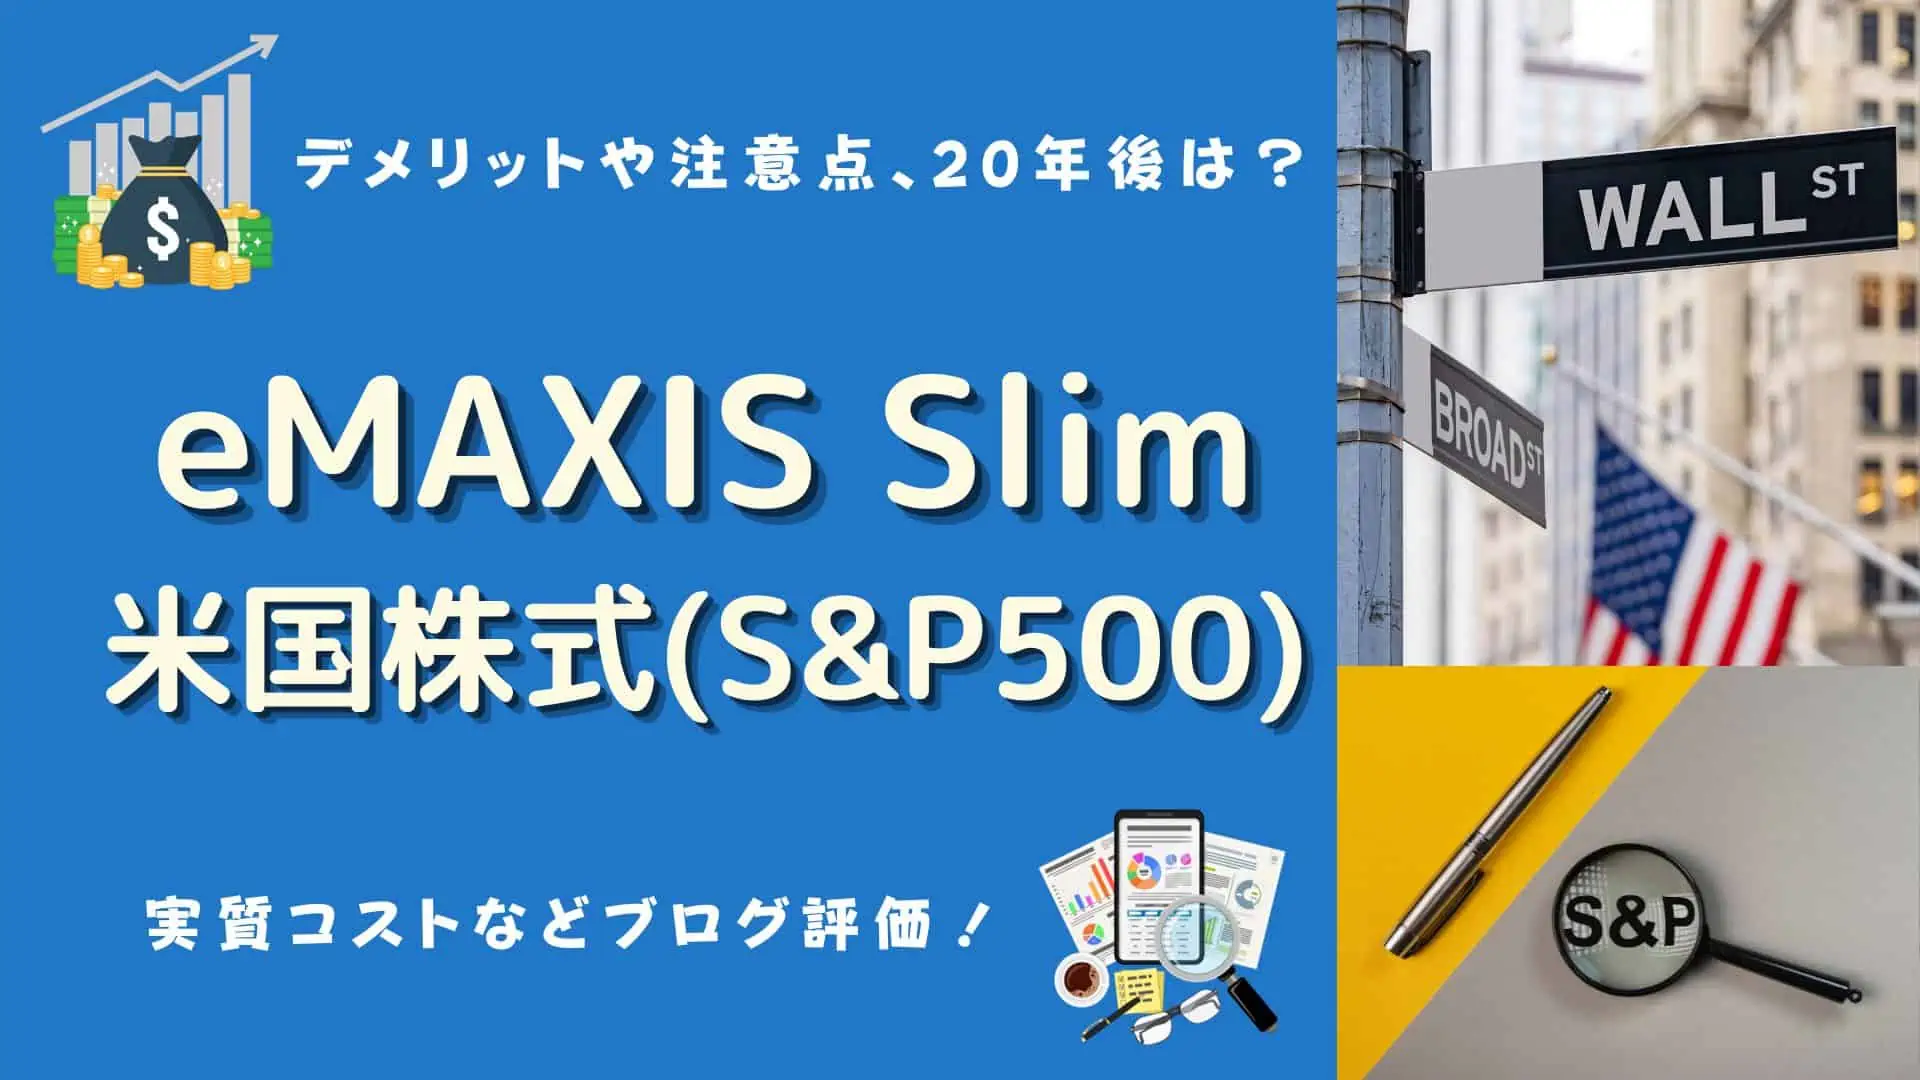 eMAXI Slim米国株式(S&P500)